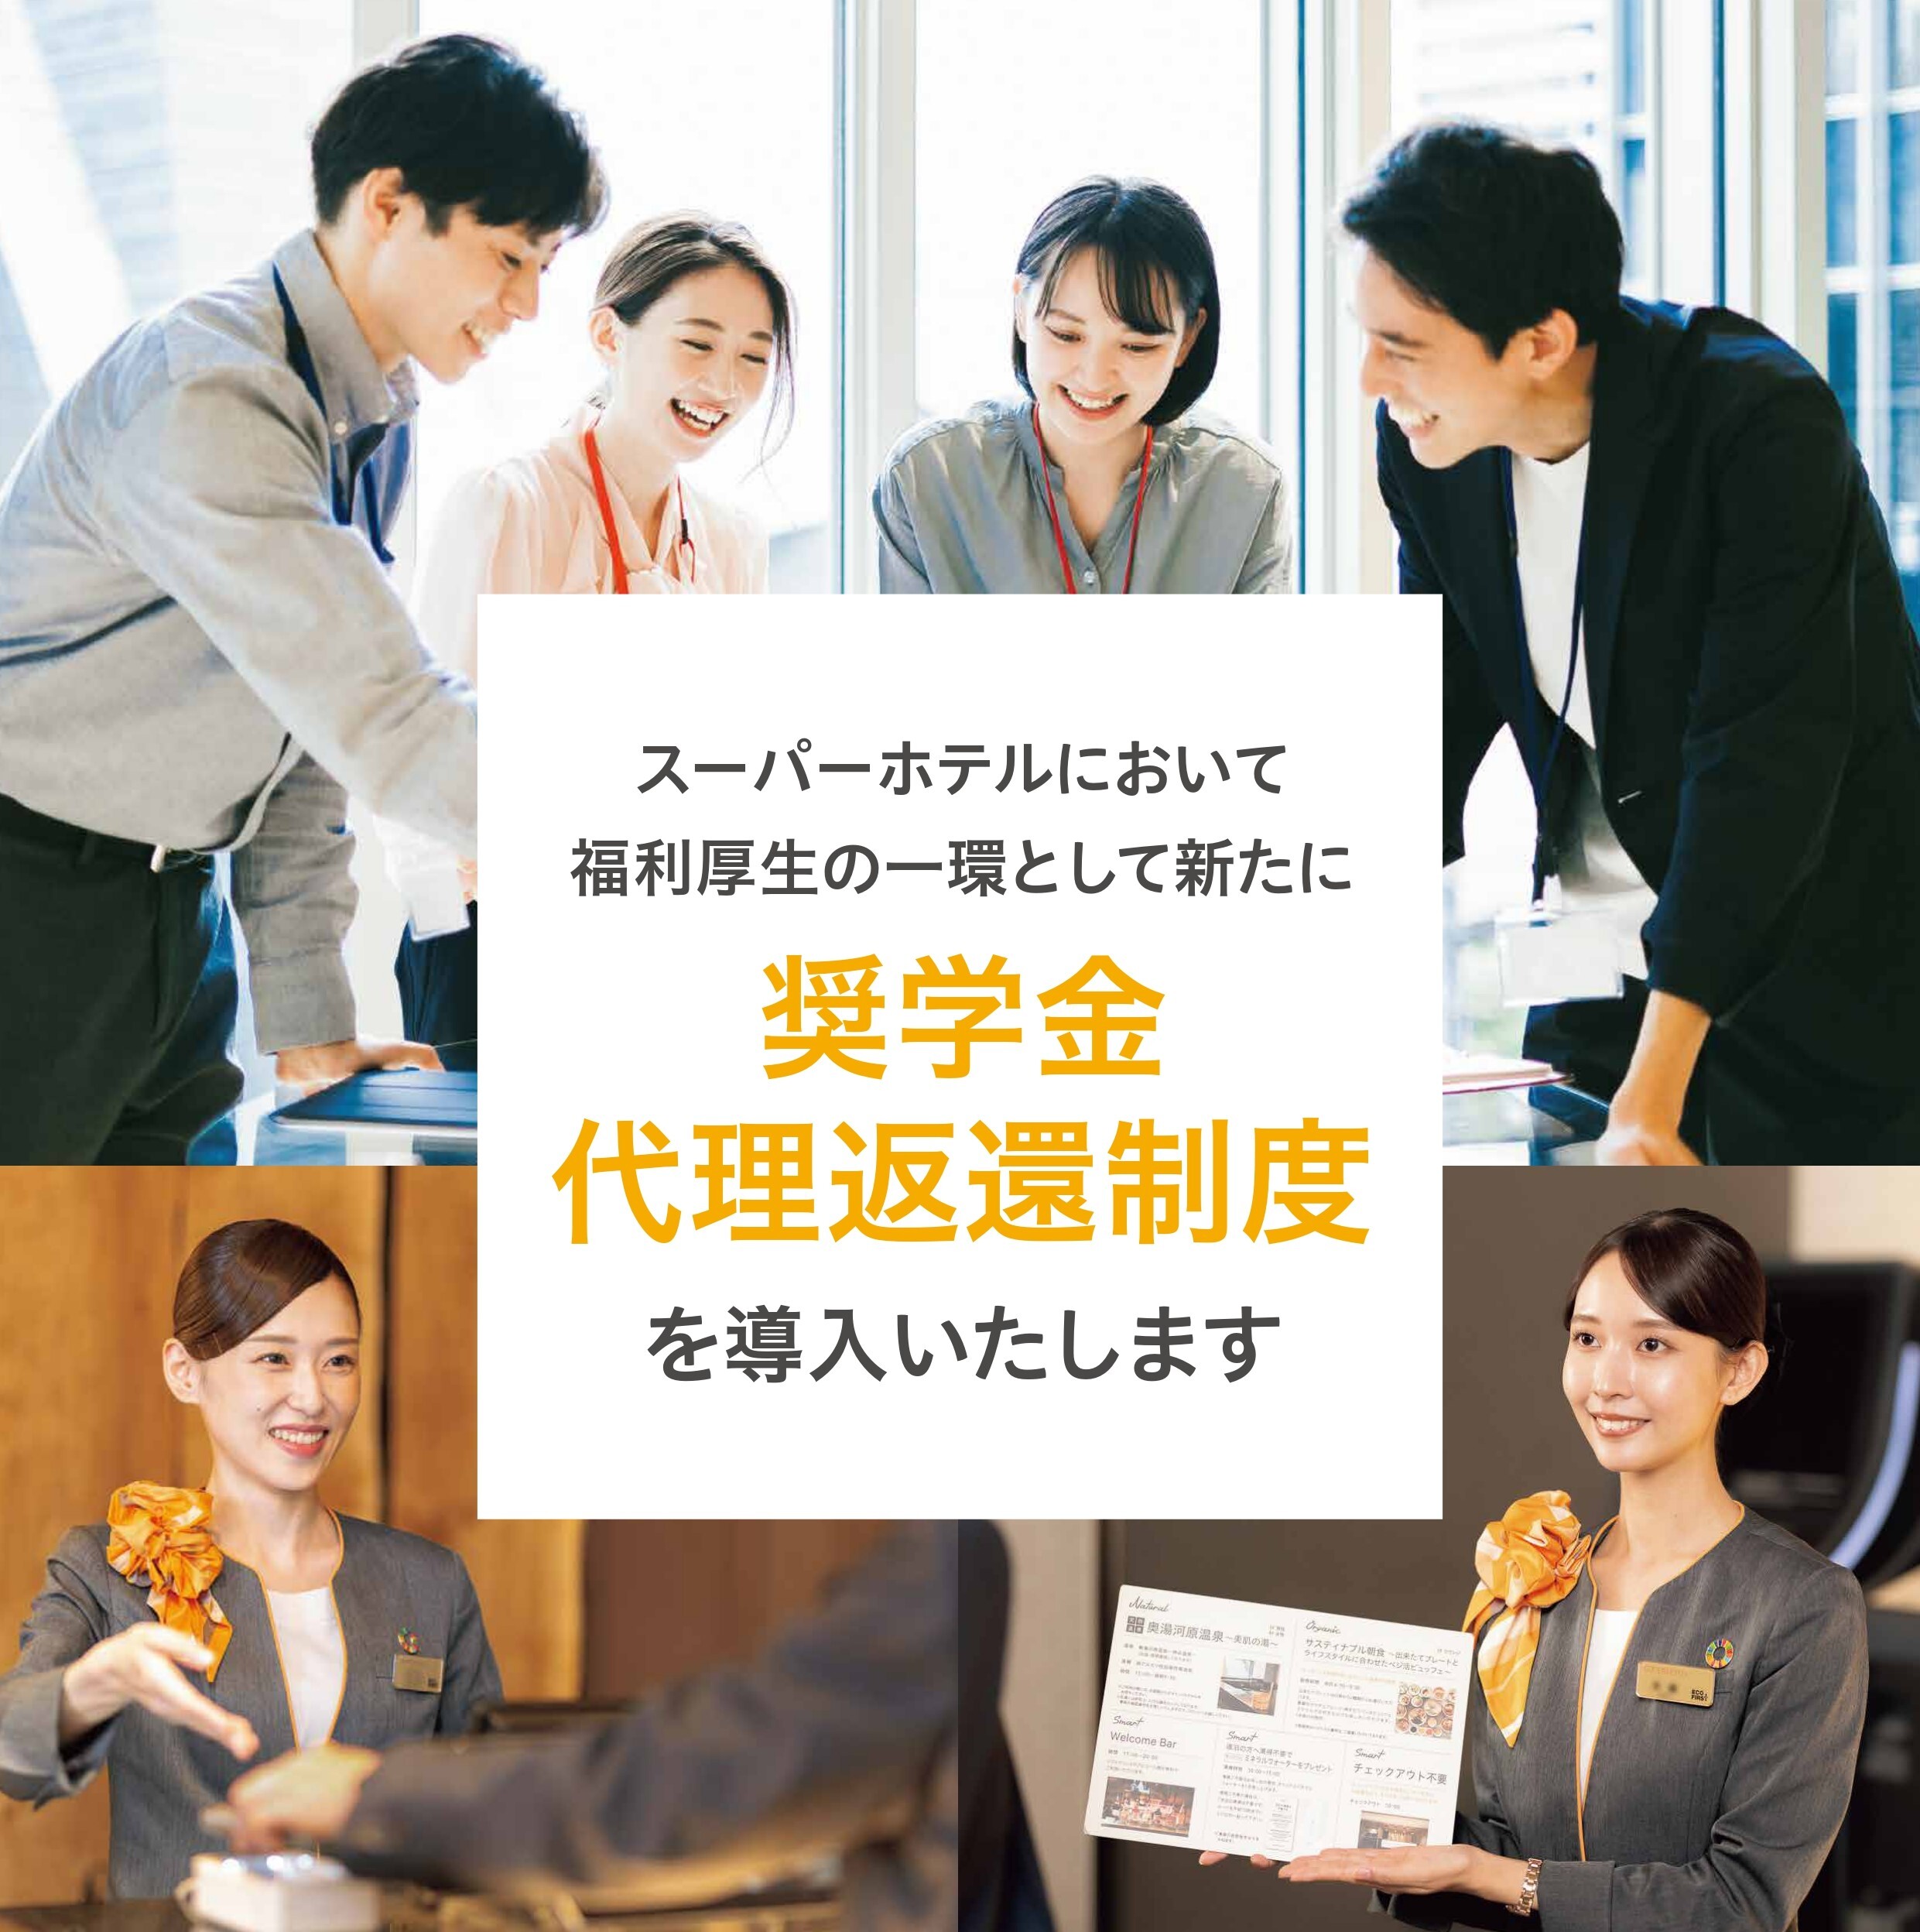 福利厚生制度として導入した「奨学金代理返還制度」について
日本学生支援機構のホームページに掲載